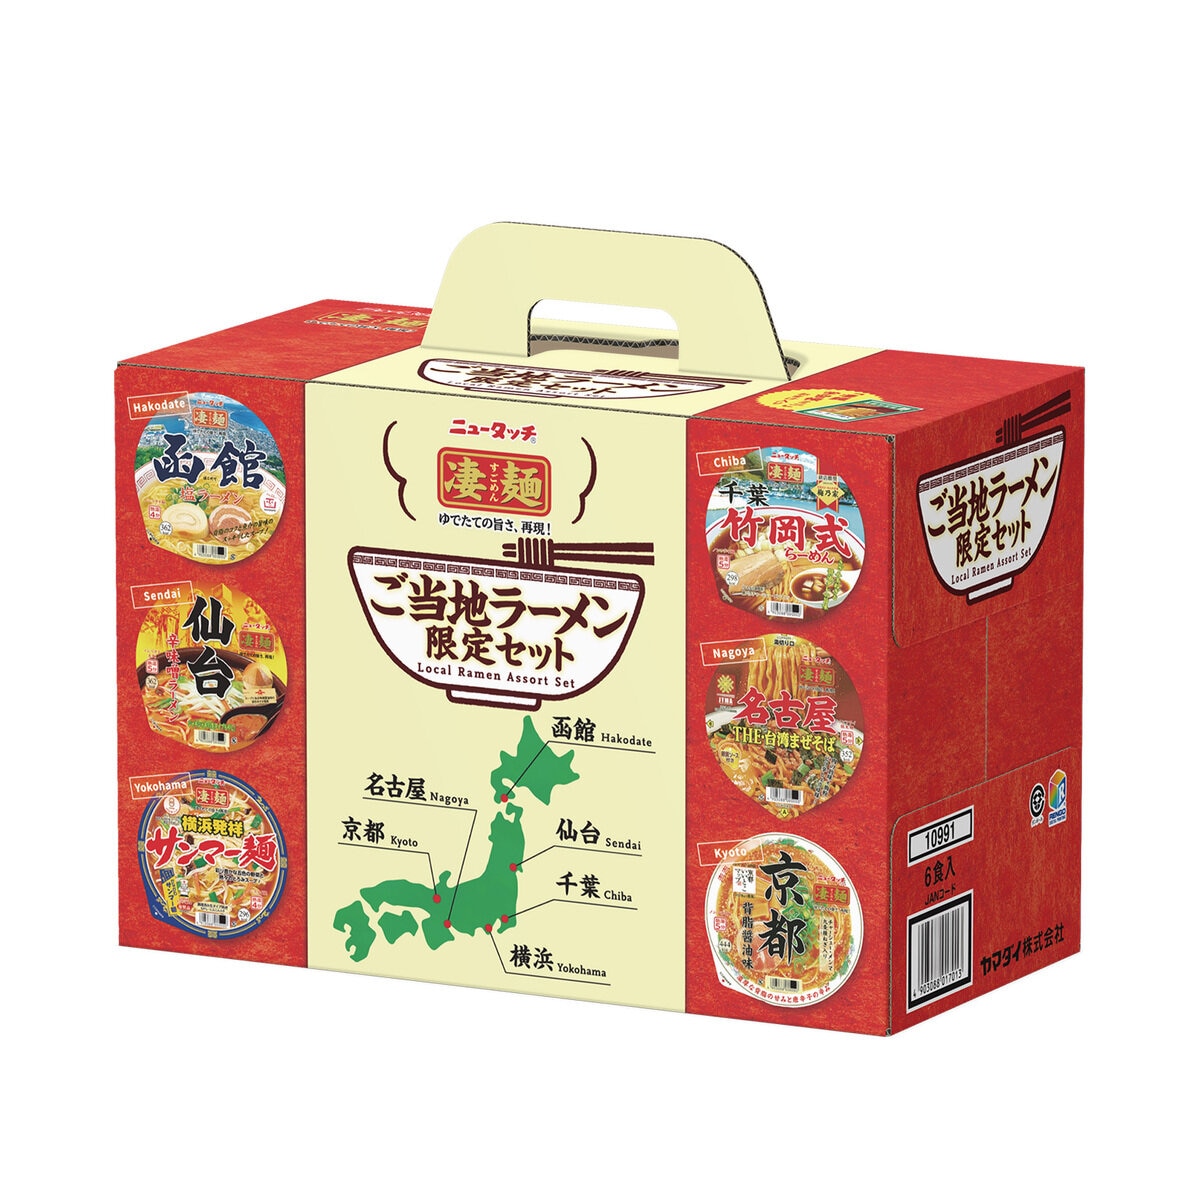 Costco　6食パック　ニュータッチ凄麺ご当地セット　Japan